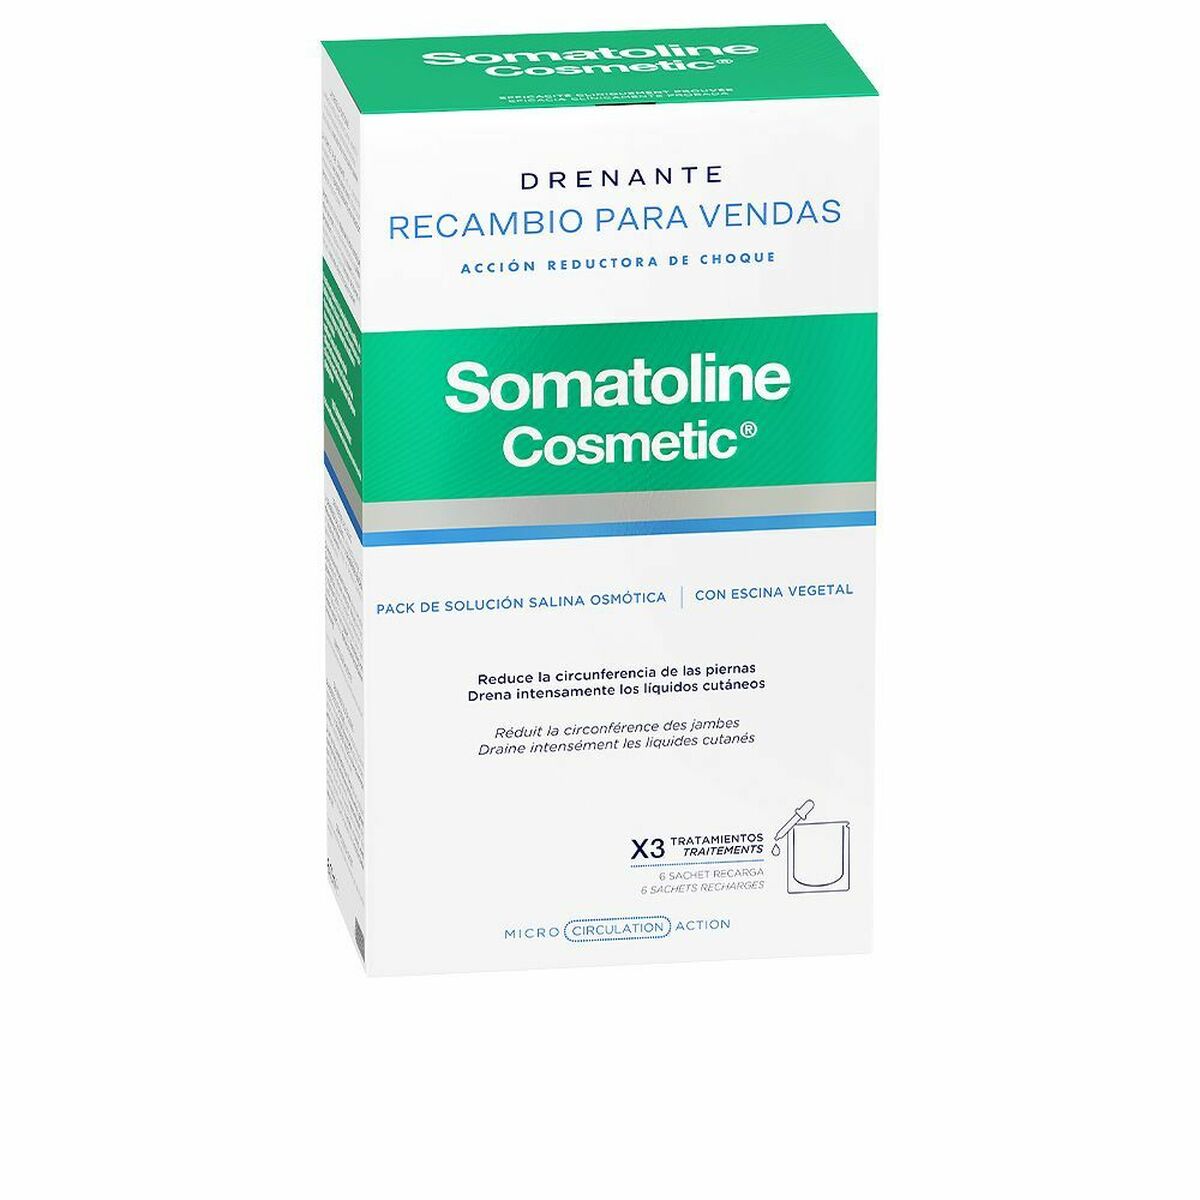 Bandages Somatoline Drenante Recambio Reducer Draining Bandages 6 Pieces